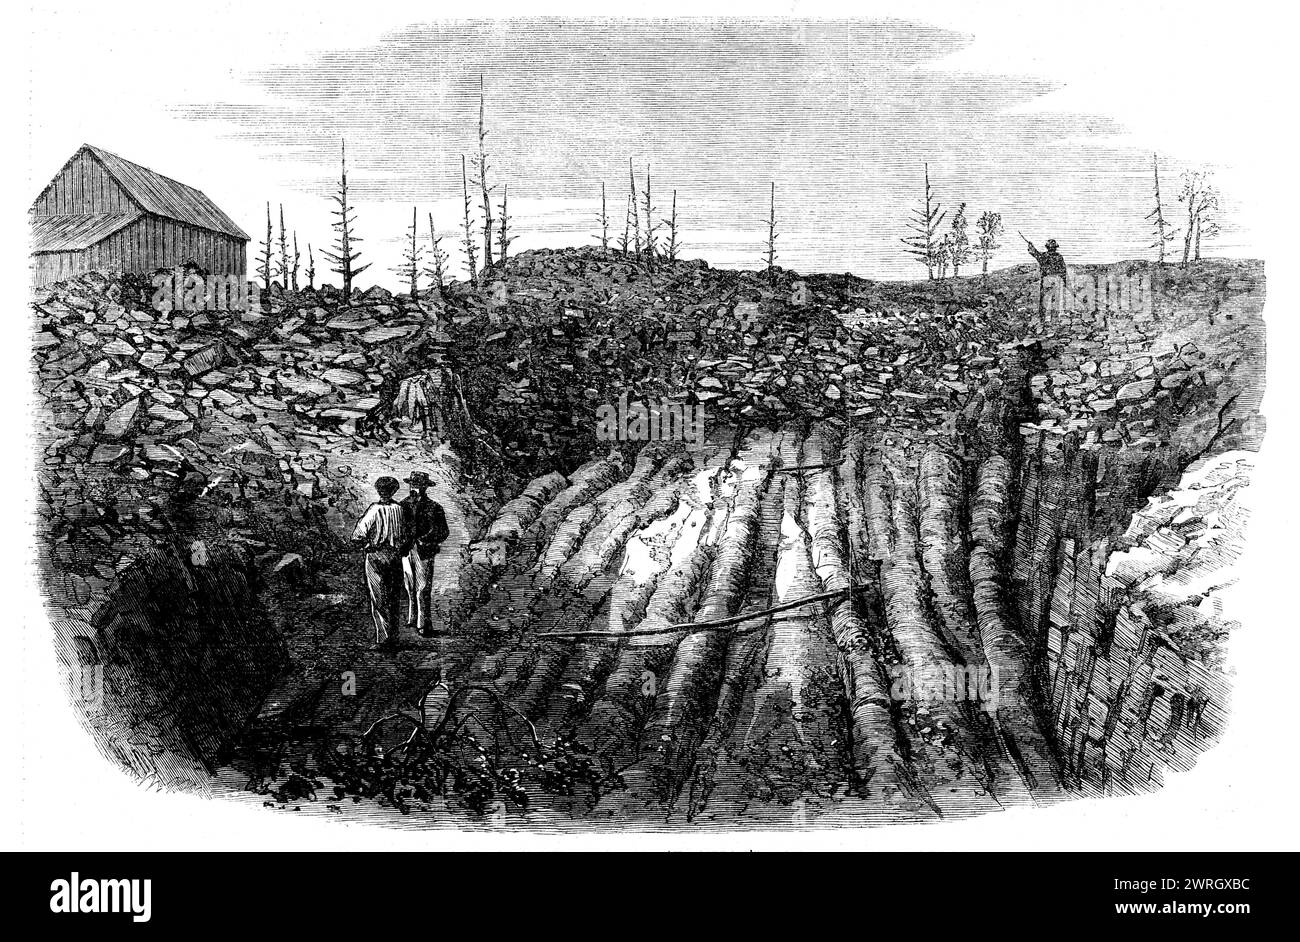 Nova Scotian Goldfields: Horizontale Formation von Ohrquarz auf Laidlaw's Farm, [Kanada], 1862. Gravur einer Fotografie von Captain W. D. Tompson vom 17. Regiment. Eine der bemerkenswertesten Ablagerungen von Edelquarz, die bisher gefunden wurden, ist zweifellos die auf Laidlaw's Farm in Nova Scotia. Die wichtigsten Bauwerke befinden sich hier in der Nähe des Gipfels eines Hügels aus harten metaphorischen Schiefern, wo Öffnungen in einer Tiefe von etwa vier oder fünf Fuß auf einem fast horizontalen Bett aus Wellquarz von acht bis zehn Zoll Dicke gemacht wurden. Diese Kaution ist entir Stockfoto